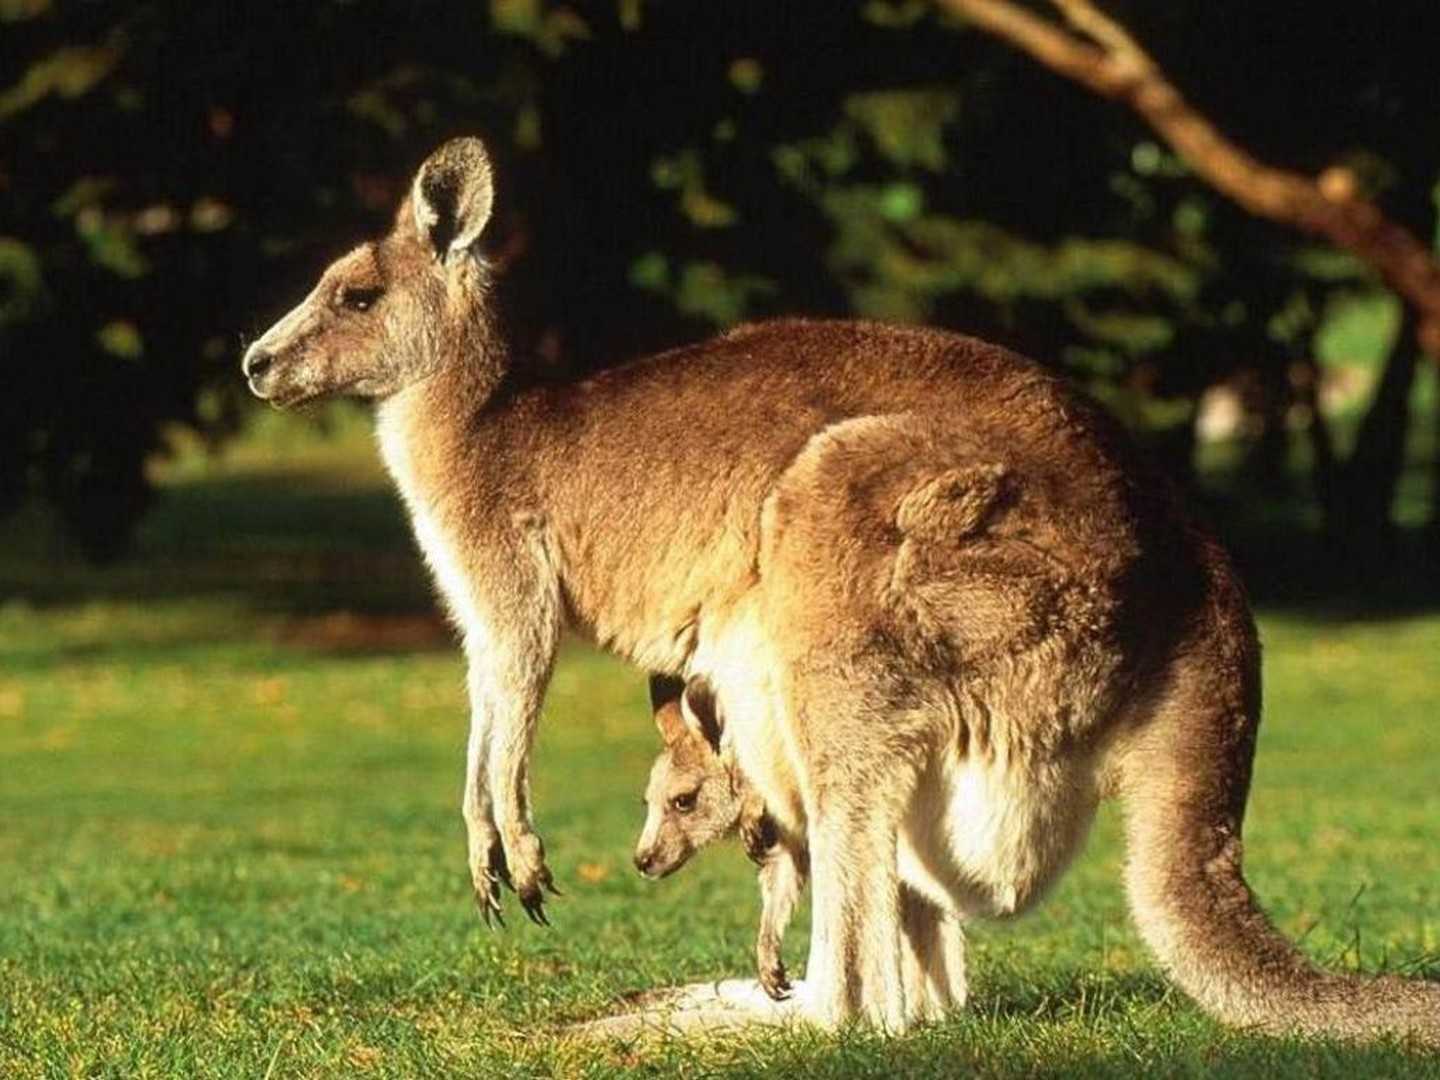 ОТВЕТ: Кенгуру являются уроженцами Австралии и обитают в лесистых местностях, пастбищах и лугах от побережья Индийского океана до